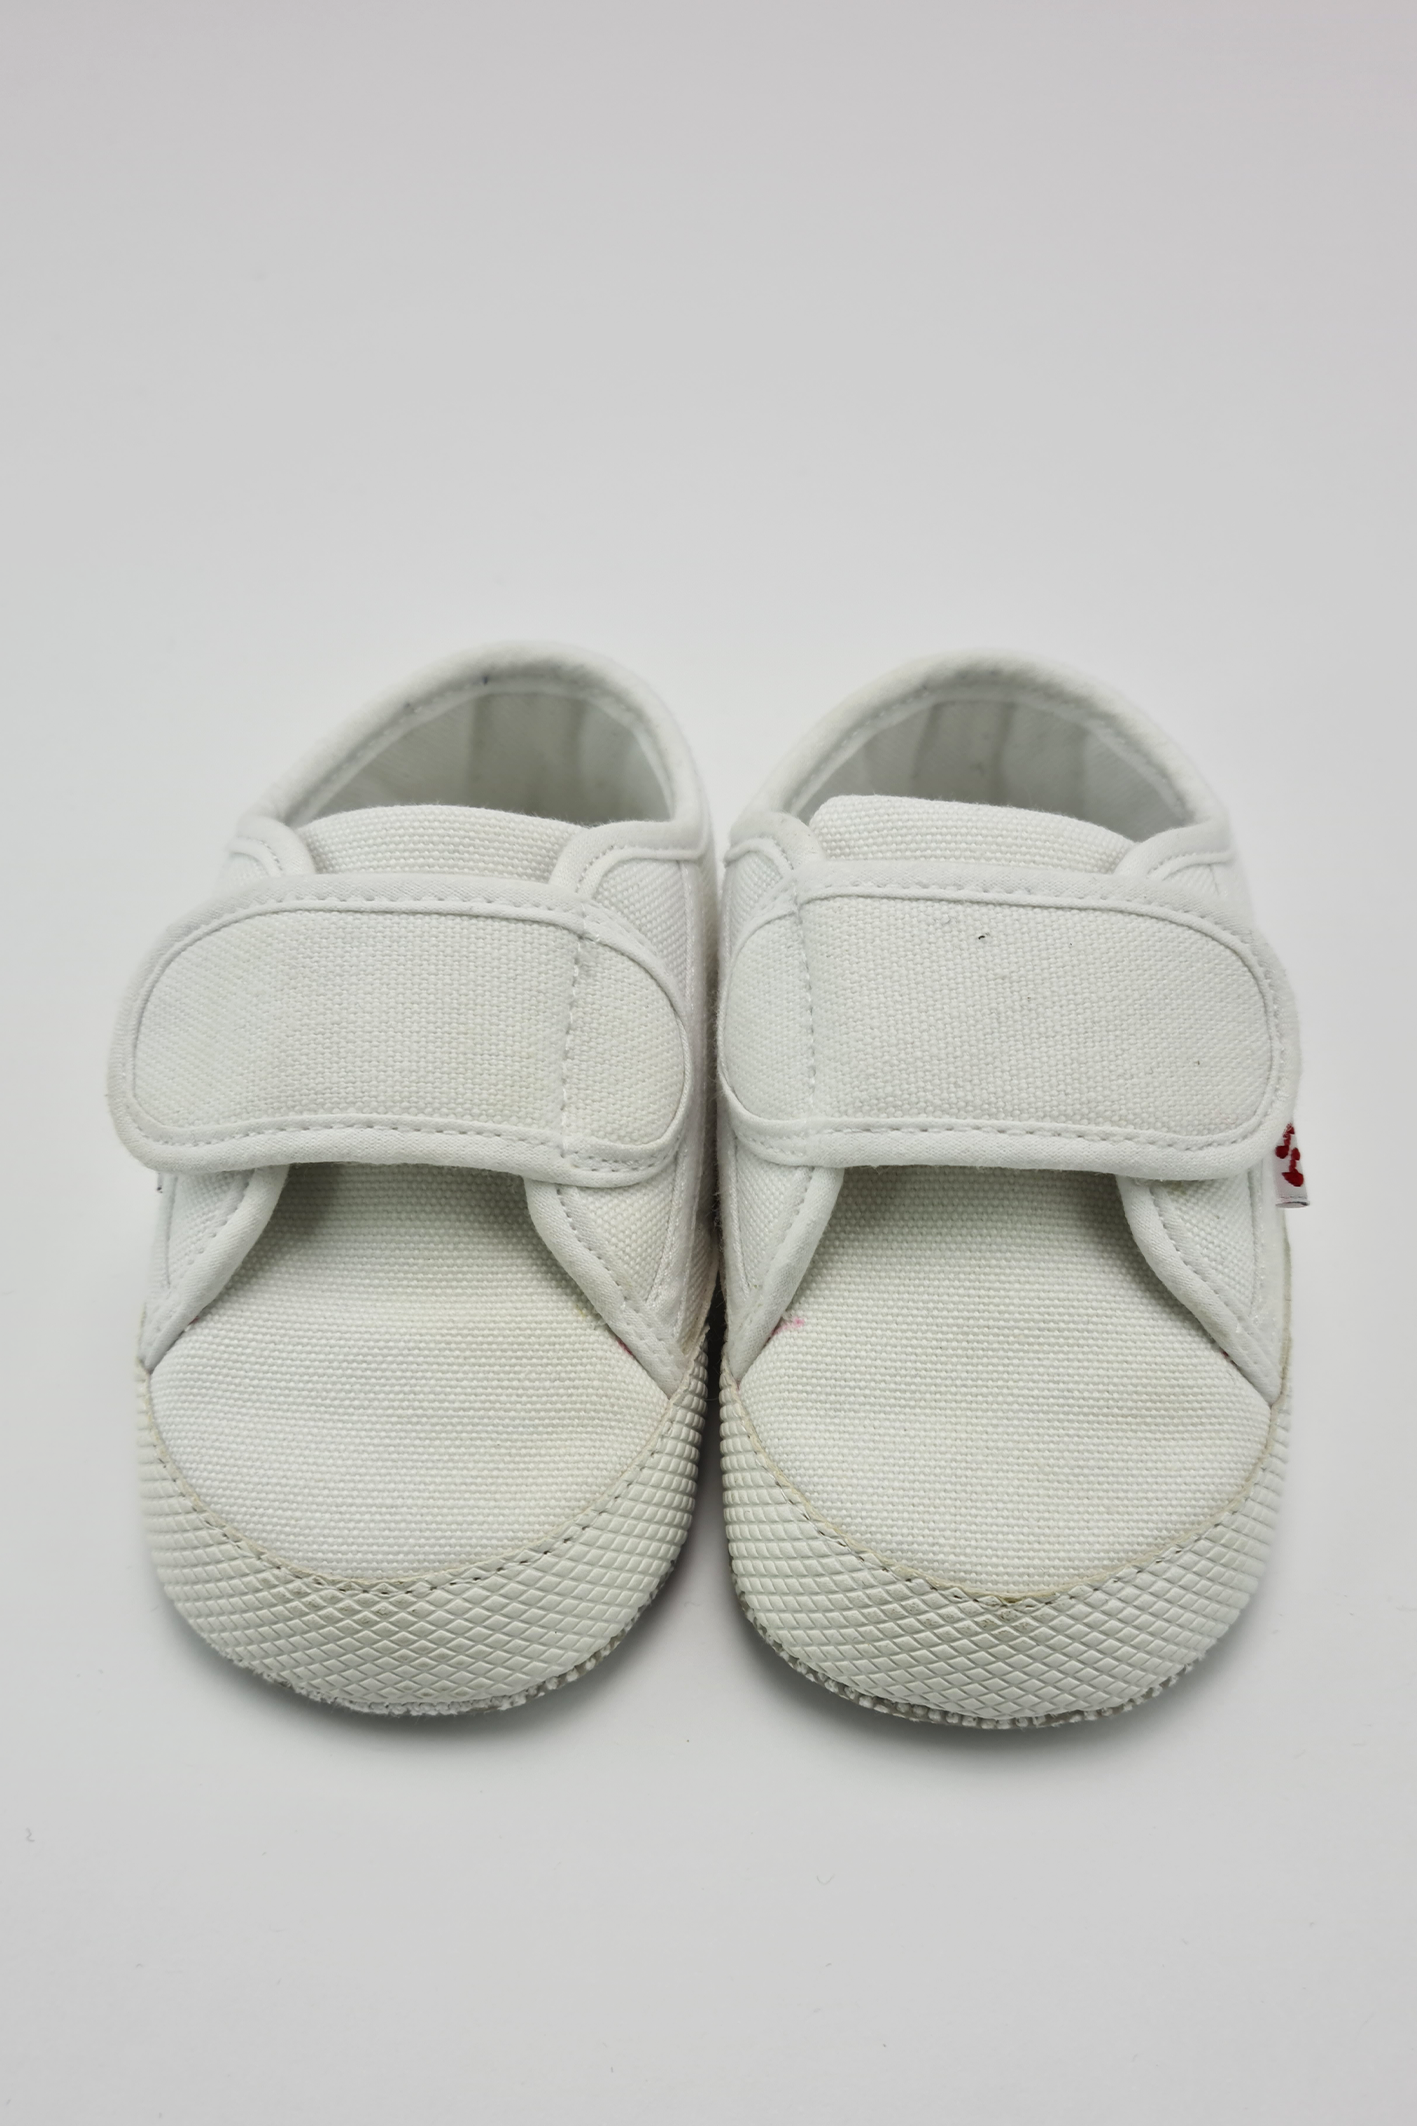 Taille 4 - Chaussures de landau en coton blanc (Superga)